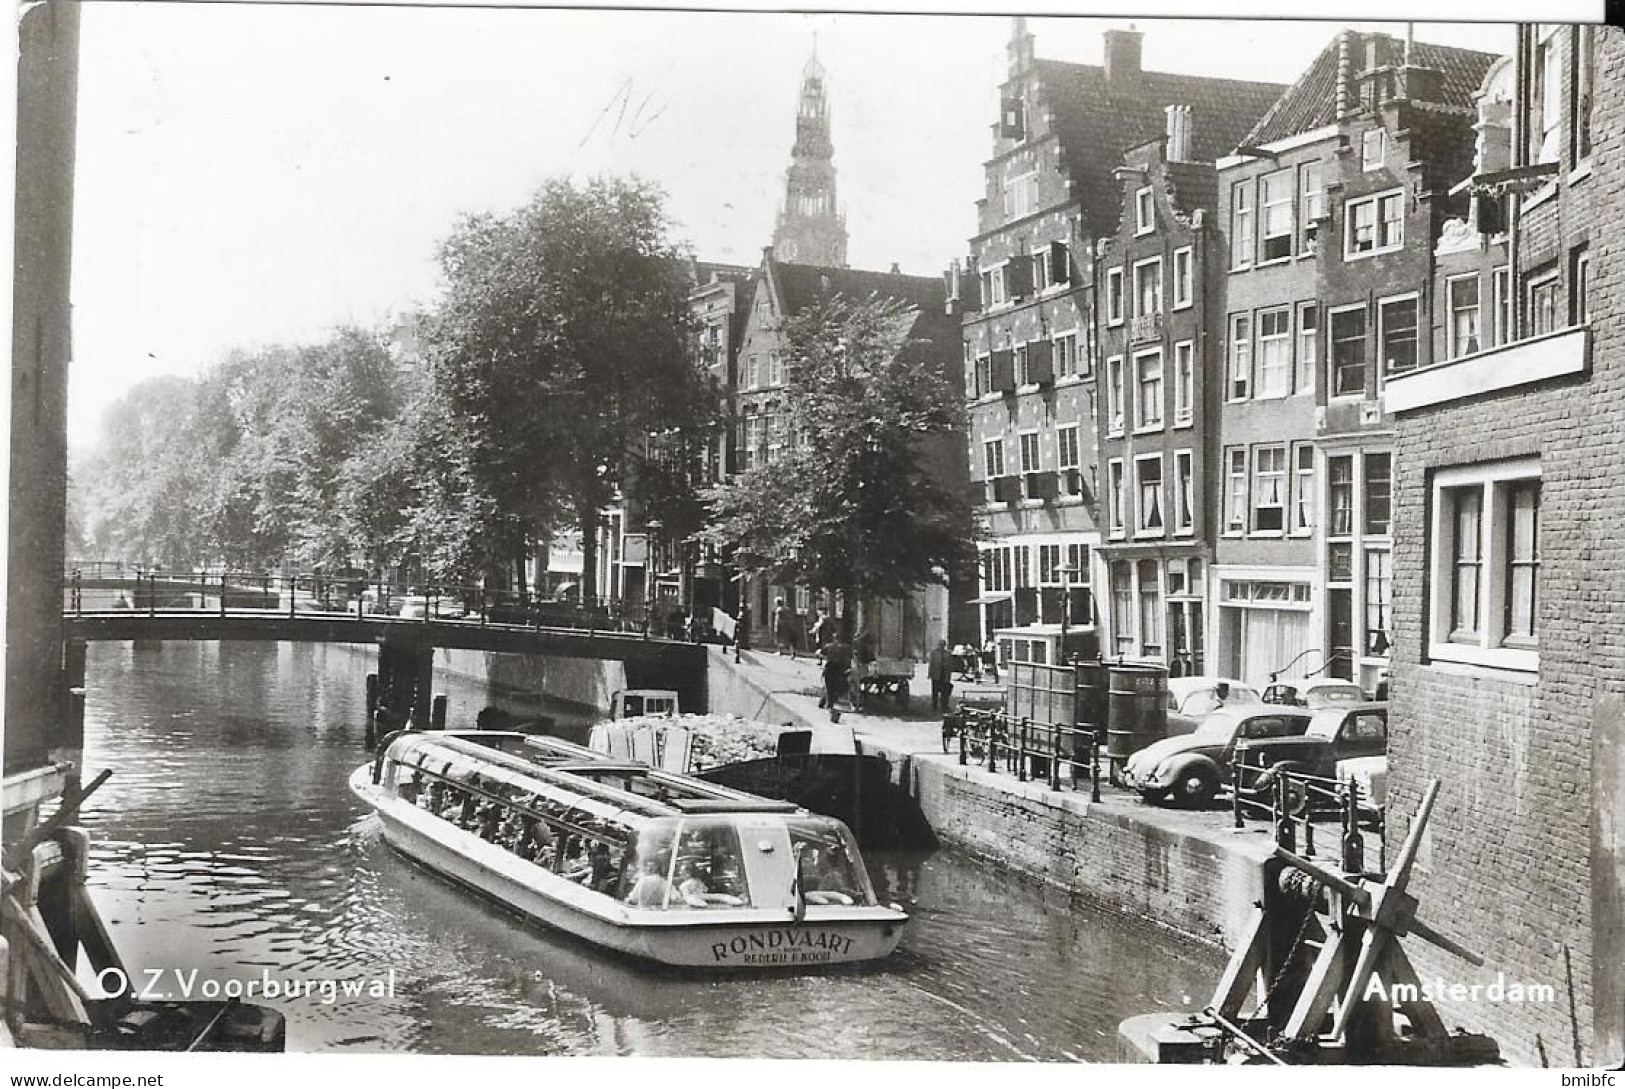 O.Z. Voorburgwal  - AMSTERDAM - Amsterdam